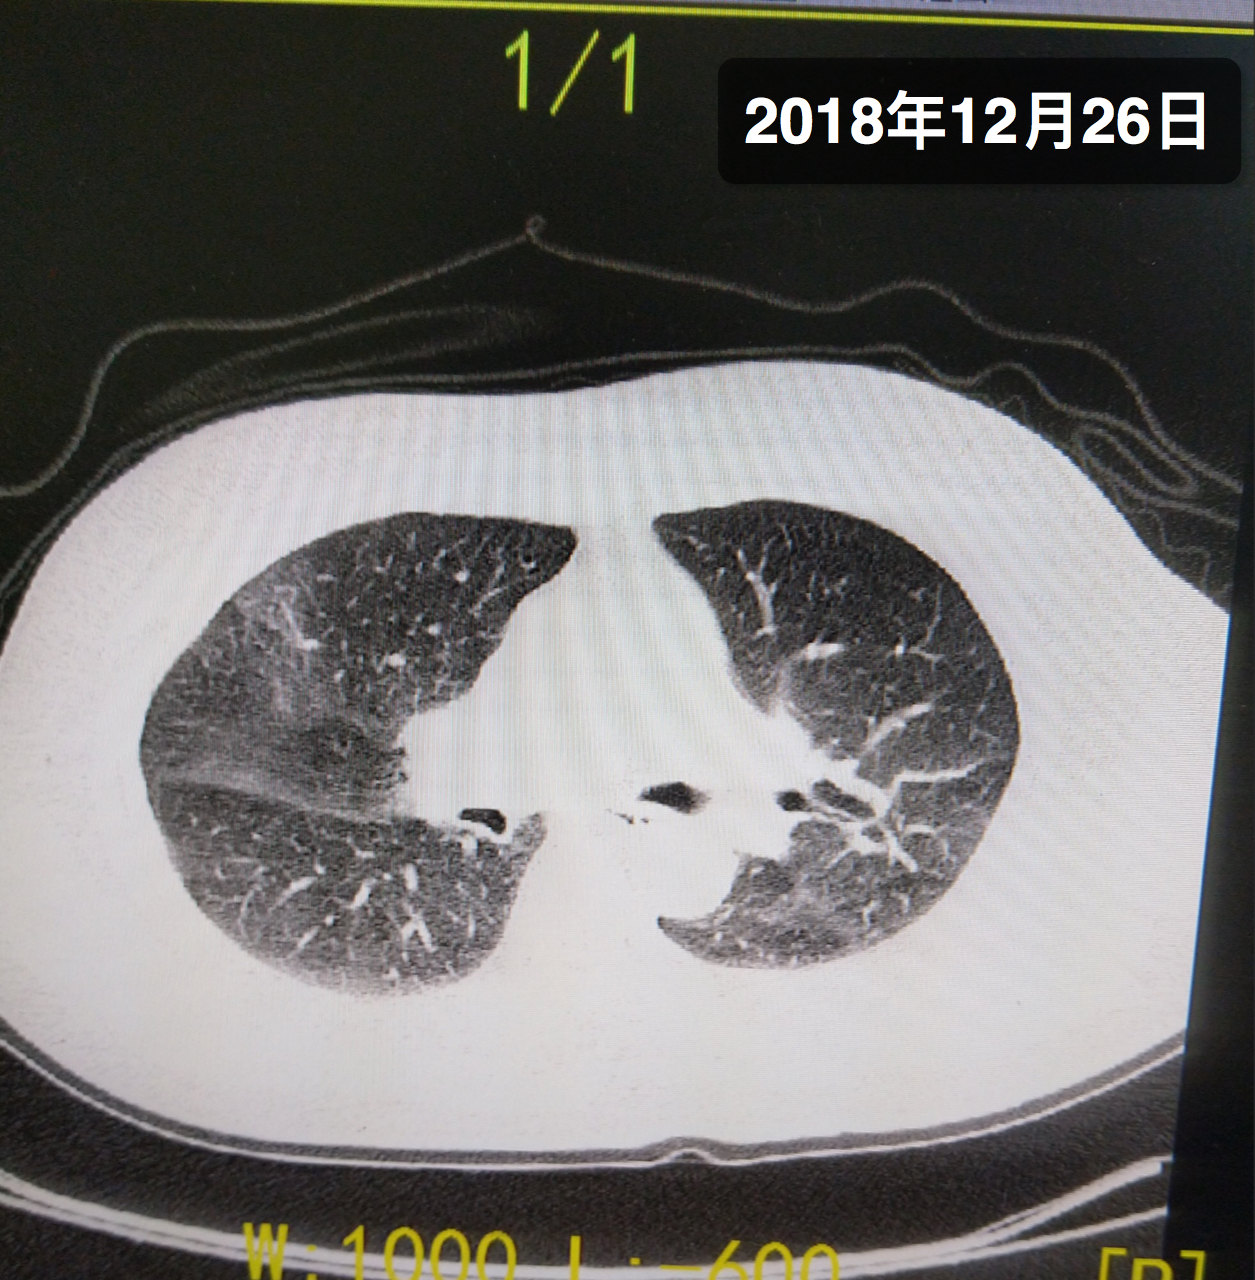 间质性肺炎属于大病吗 间质性肺炎ct影像表现